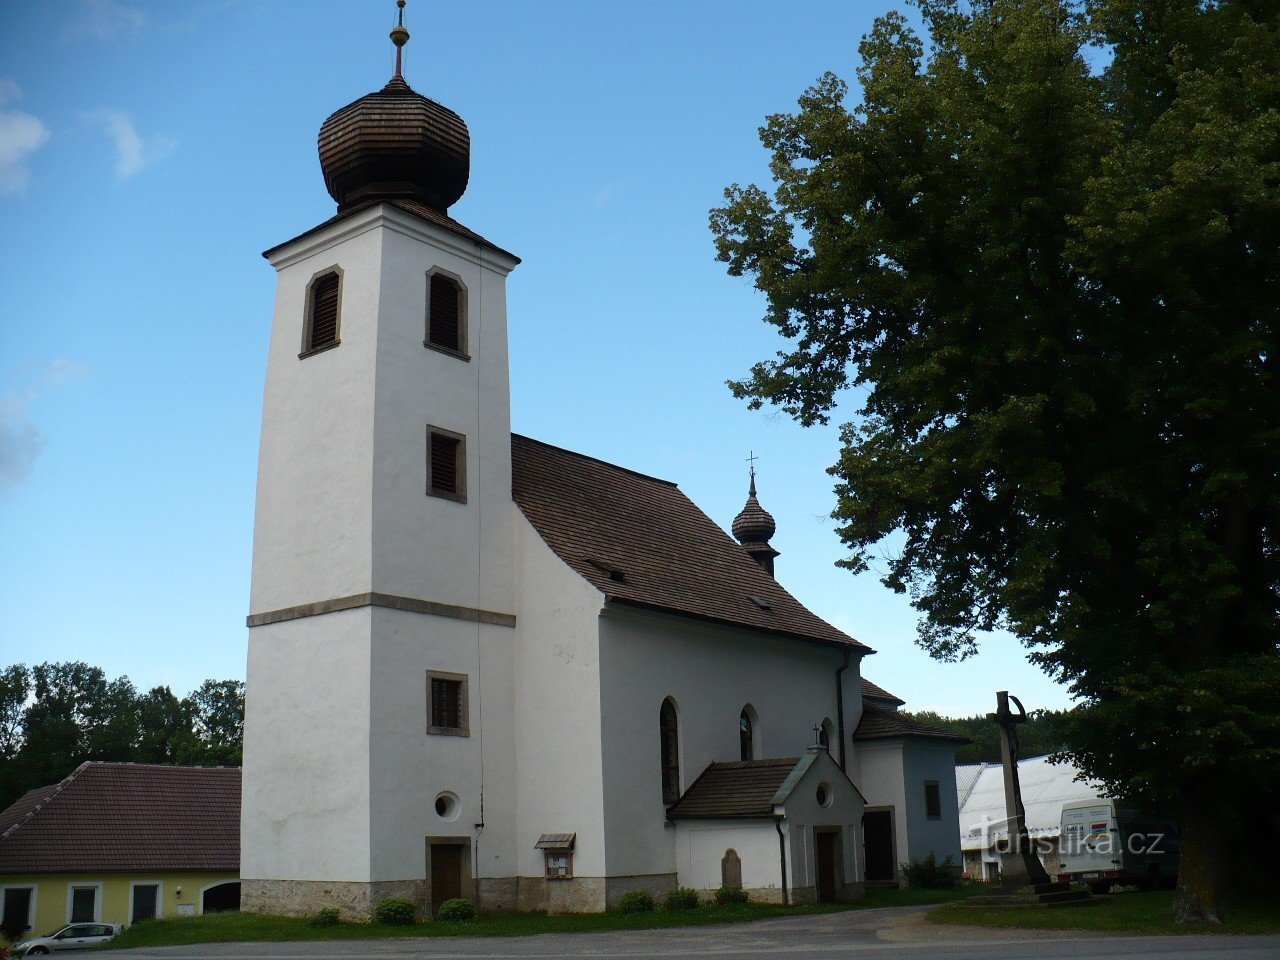 Kościół św. Vavřinec w Czeskim Rudolcu